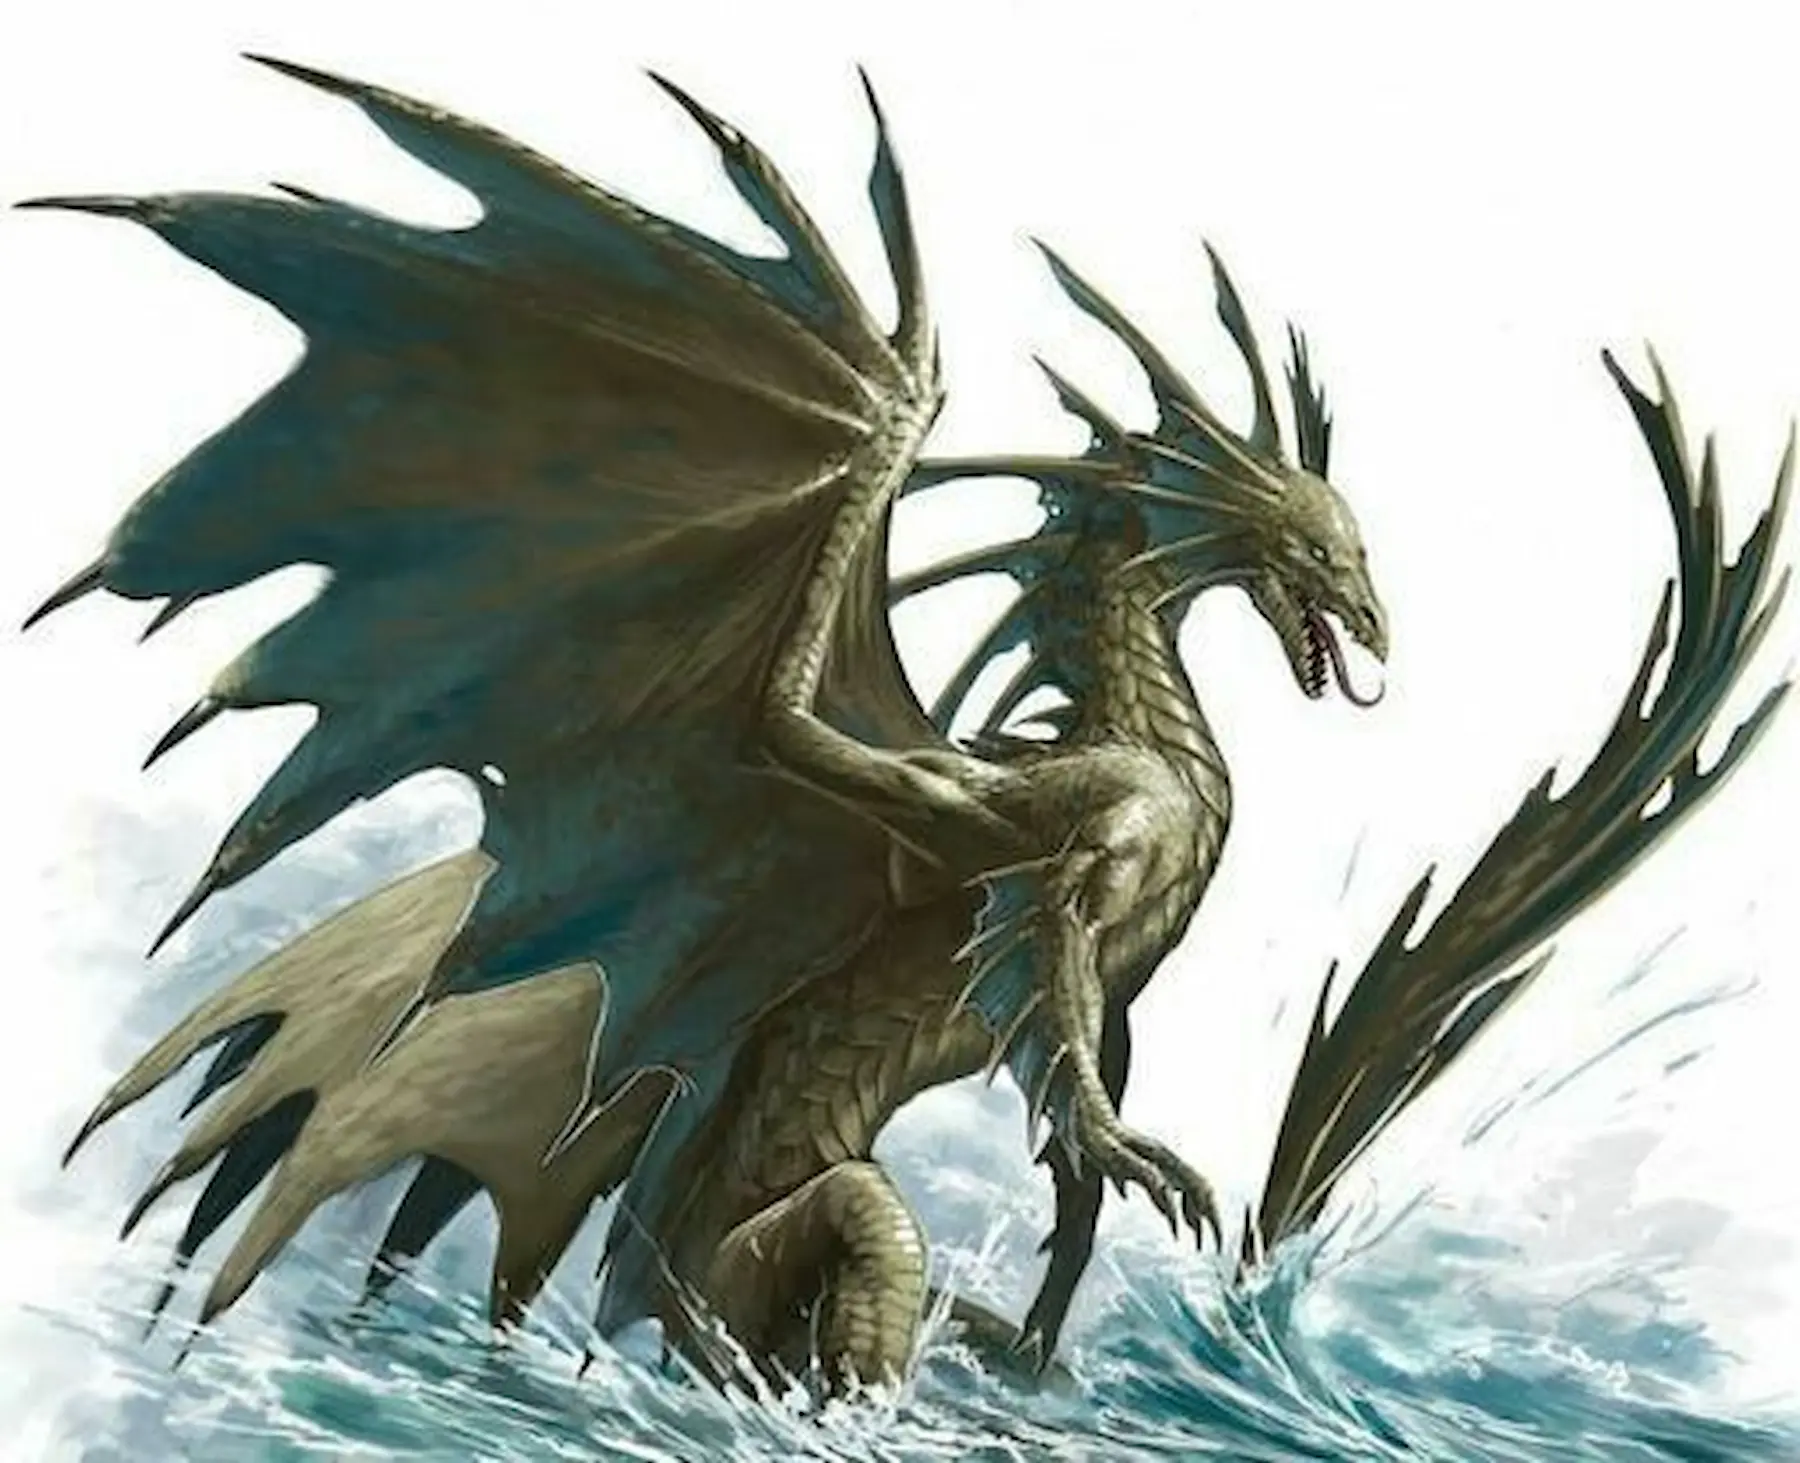 La Casa del Dragón: Todos los dragones y sus jinetes Targaryen